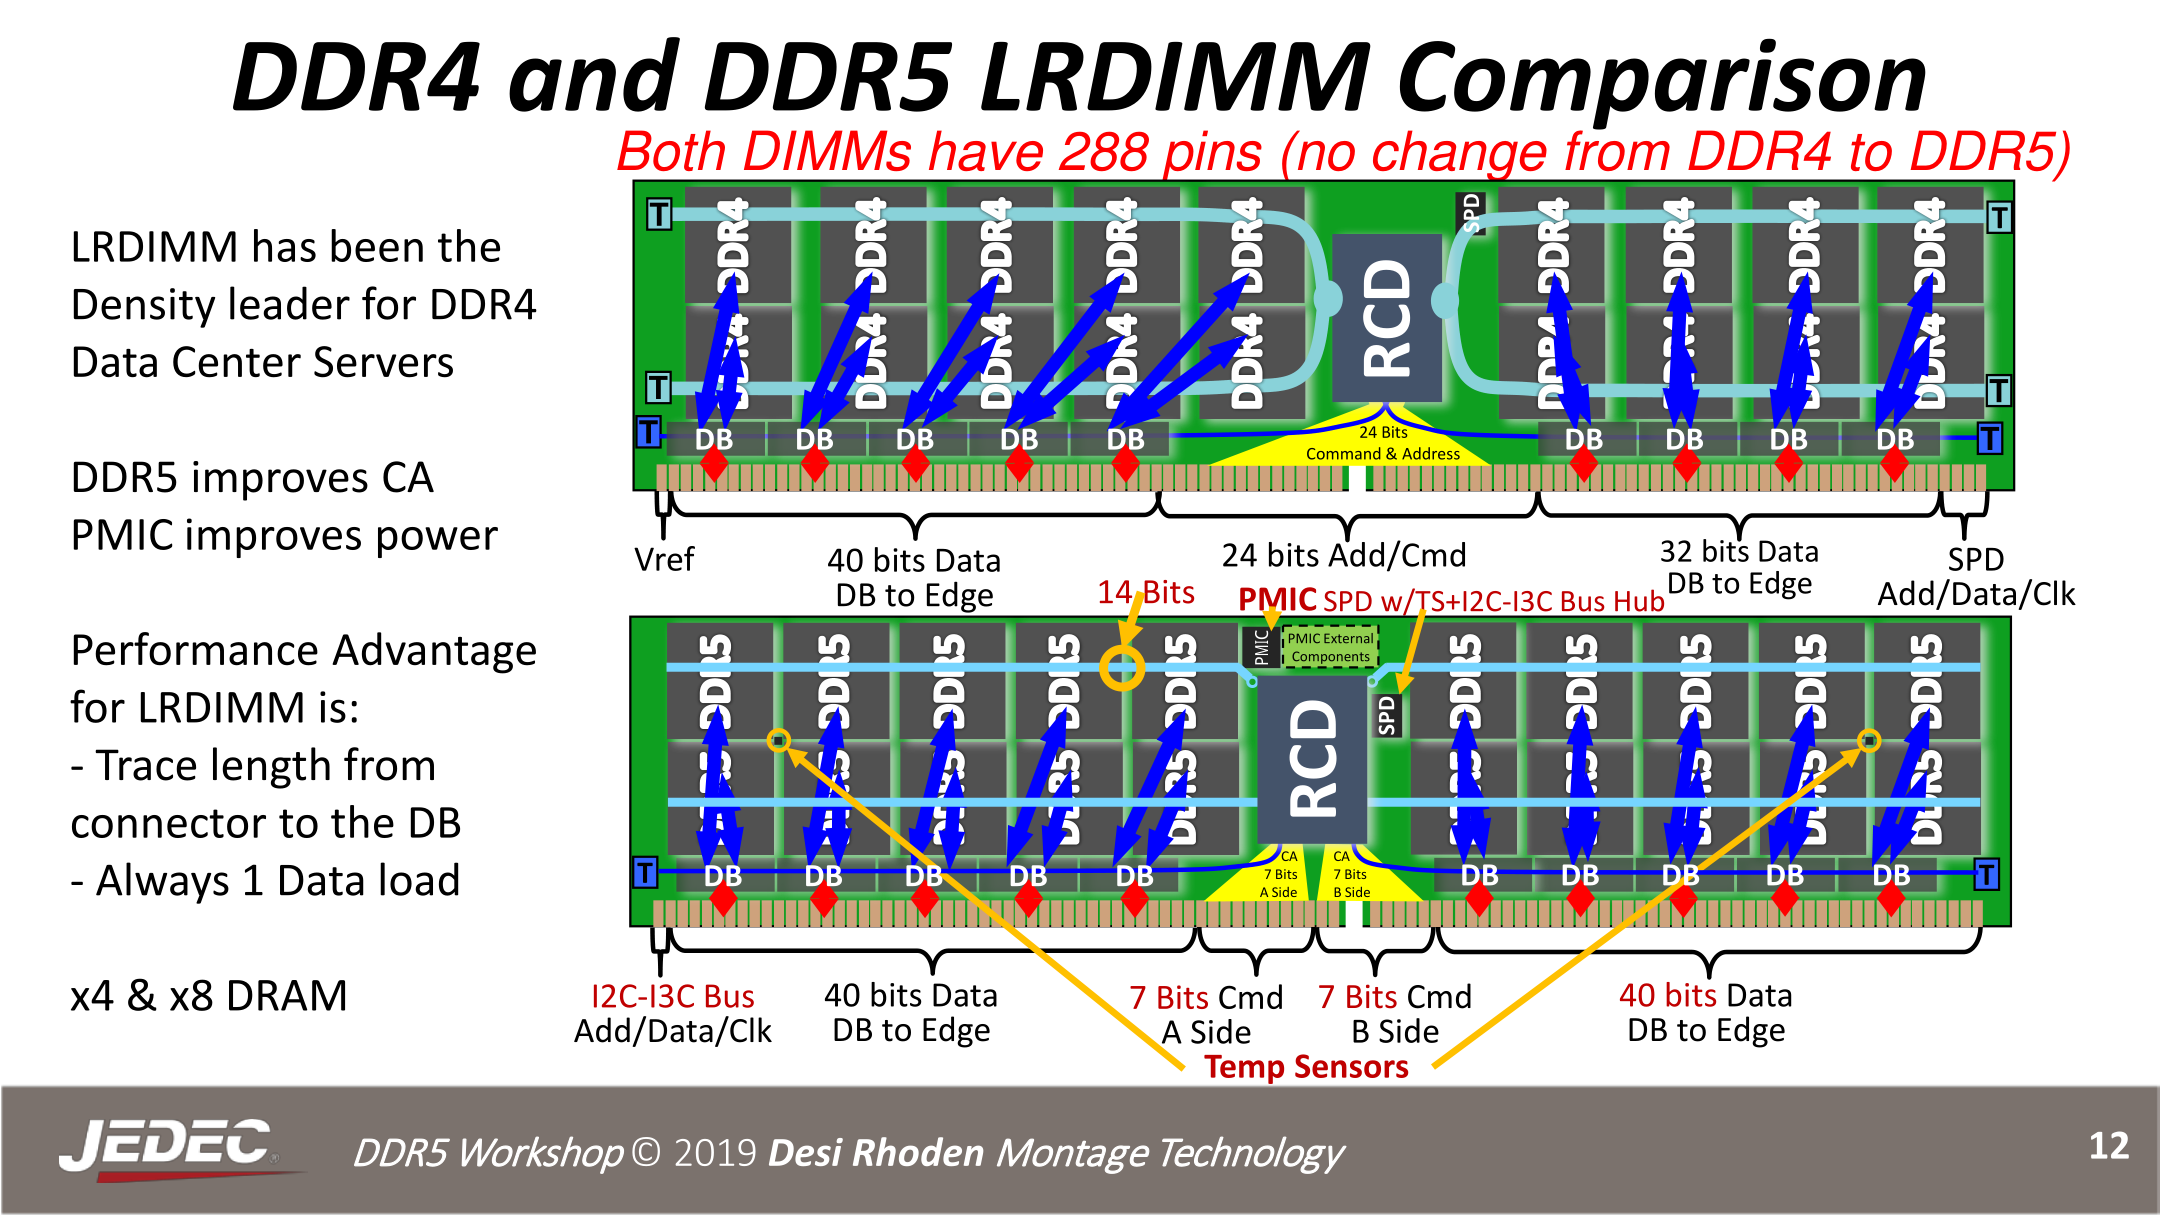 Внедрение DDR5 будет молниеносным: к 2026 году новая память займет 90% рынка - 2